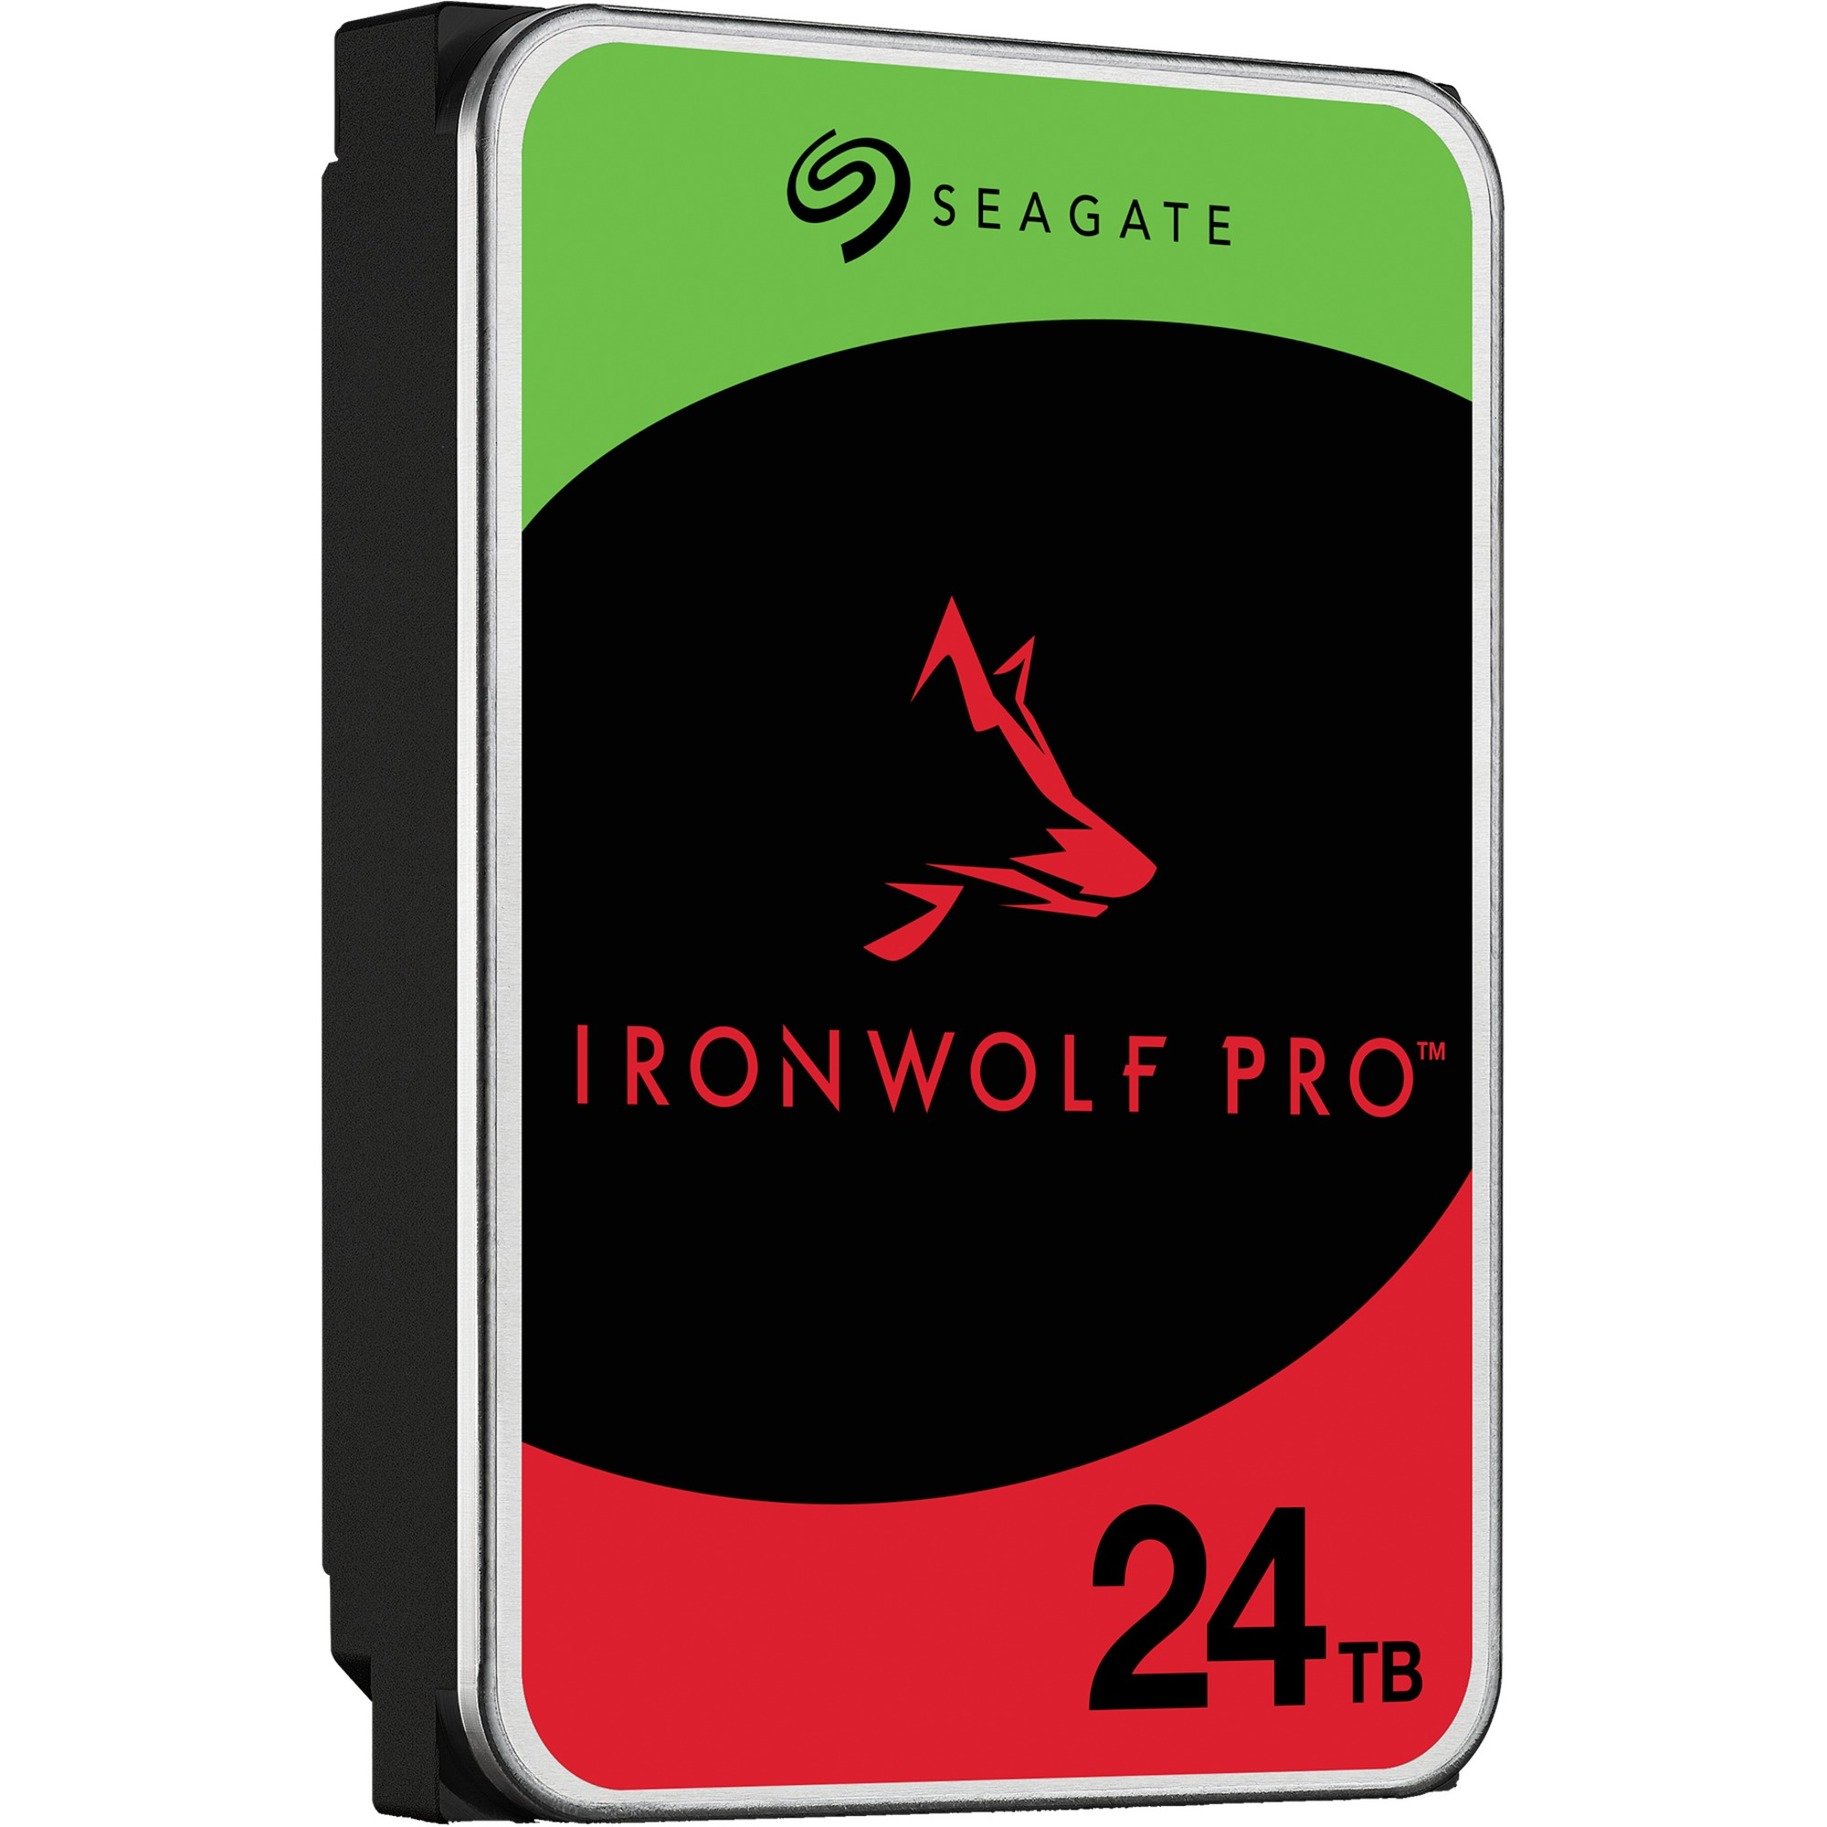 IronWolf Pro NAS 24 TB CMR, Festplatte von Seagate